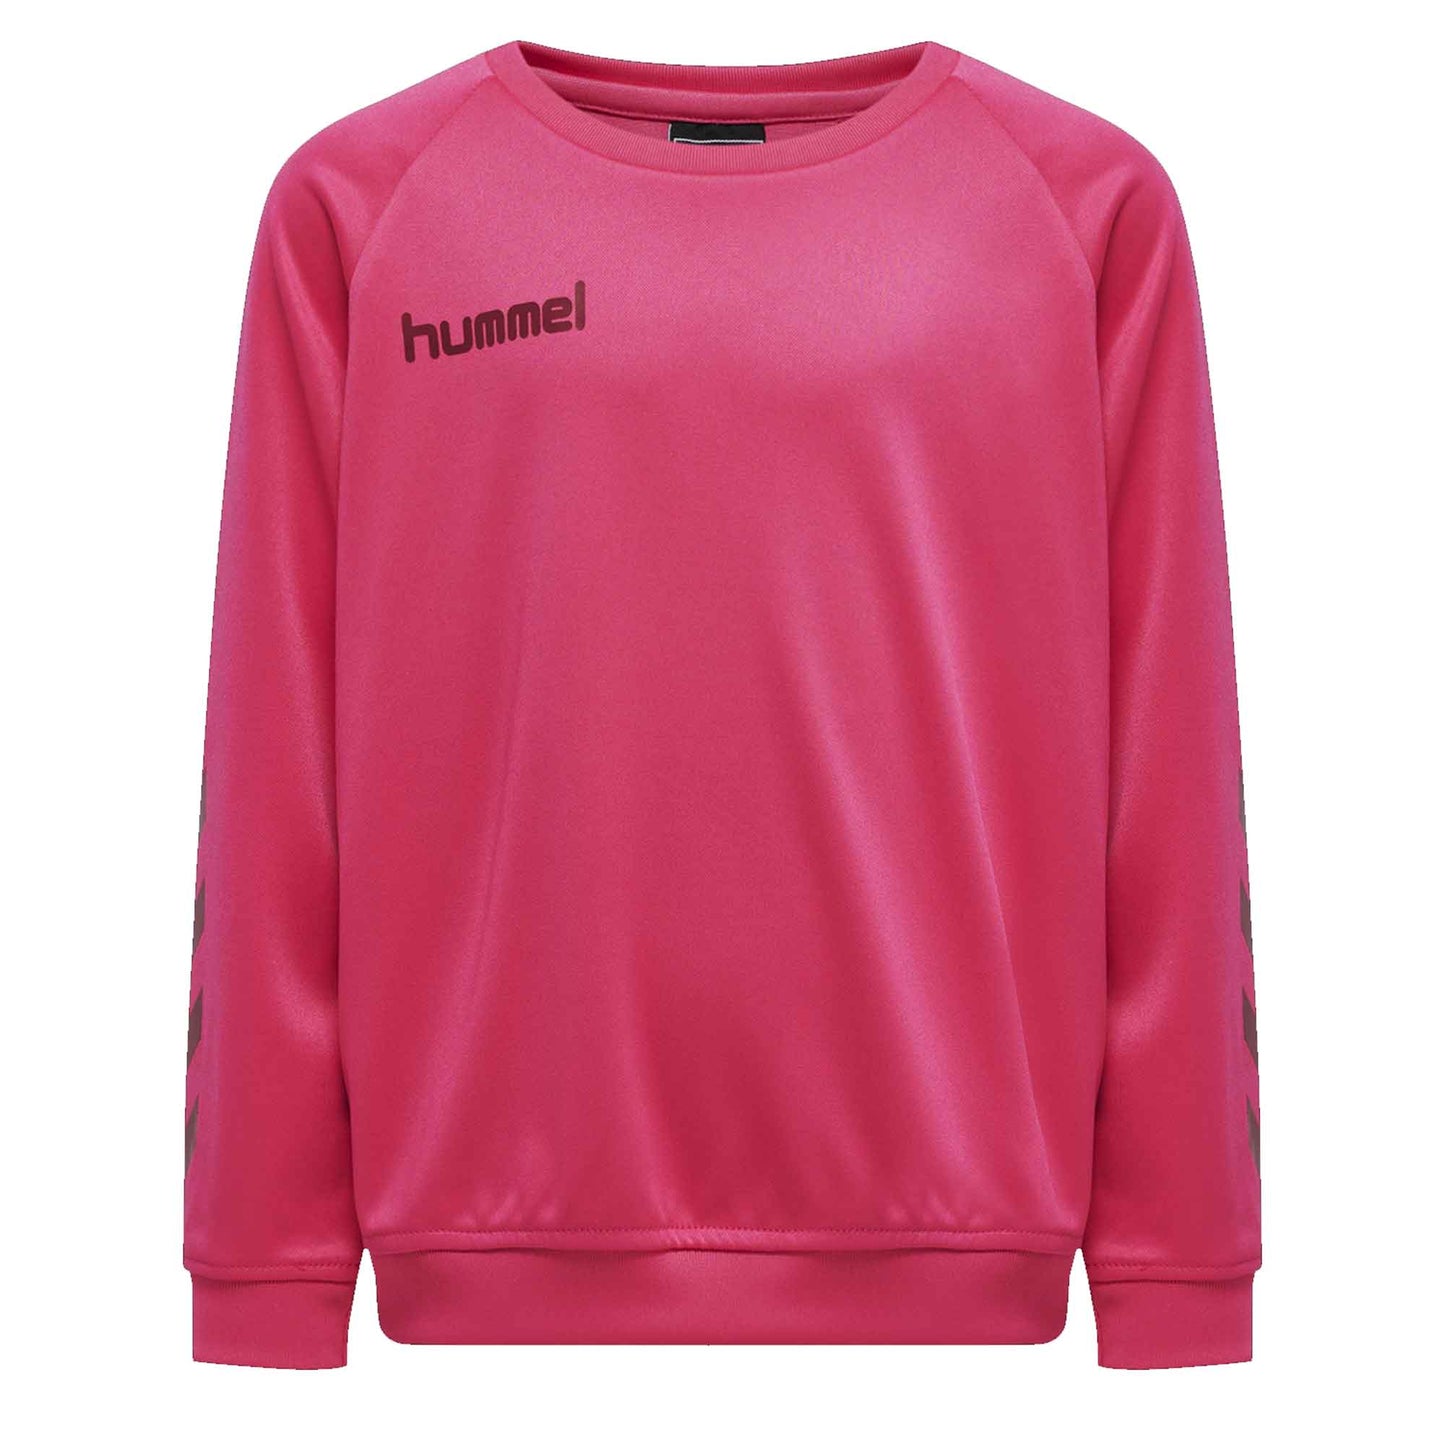 Hummel Boy's Activewear Raglan Sleeve Tee Shirt Boy's Tee Shirt HAS Apparel Hot Pink 4 Years 